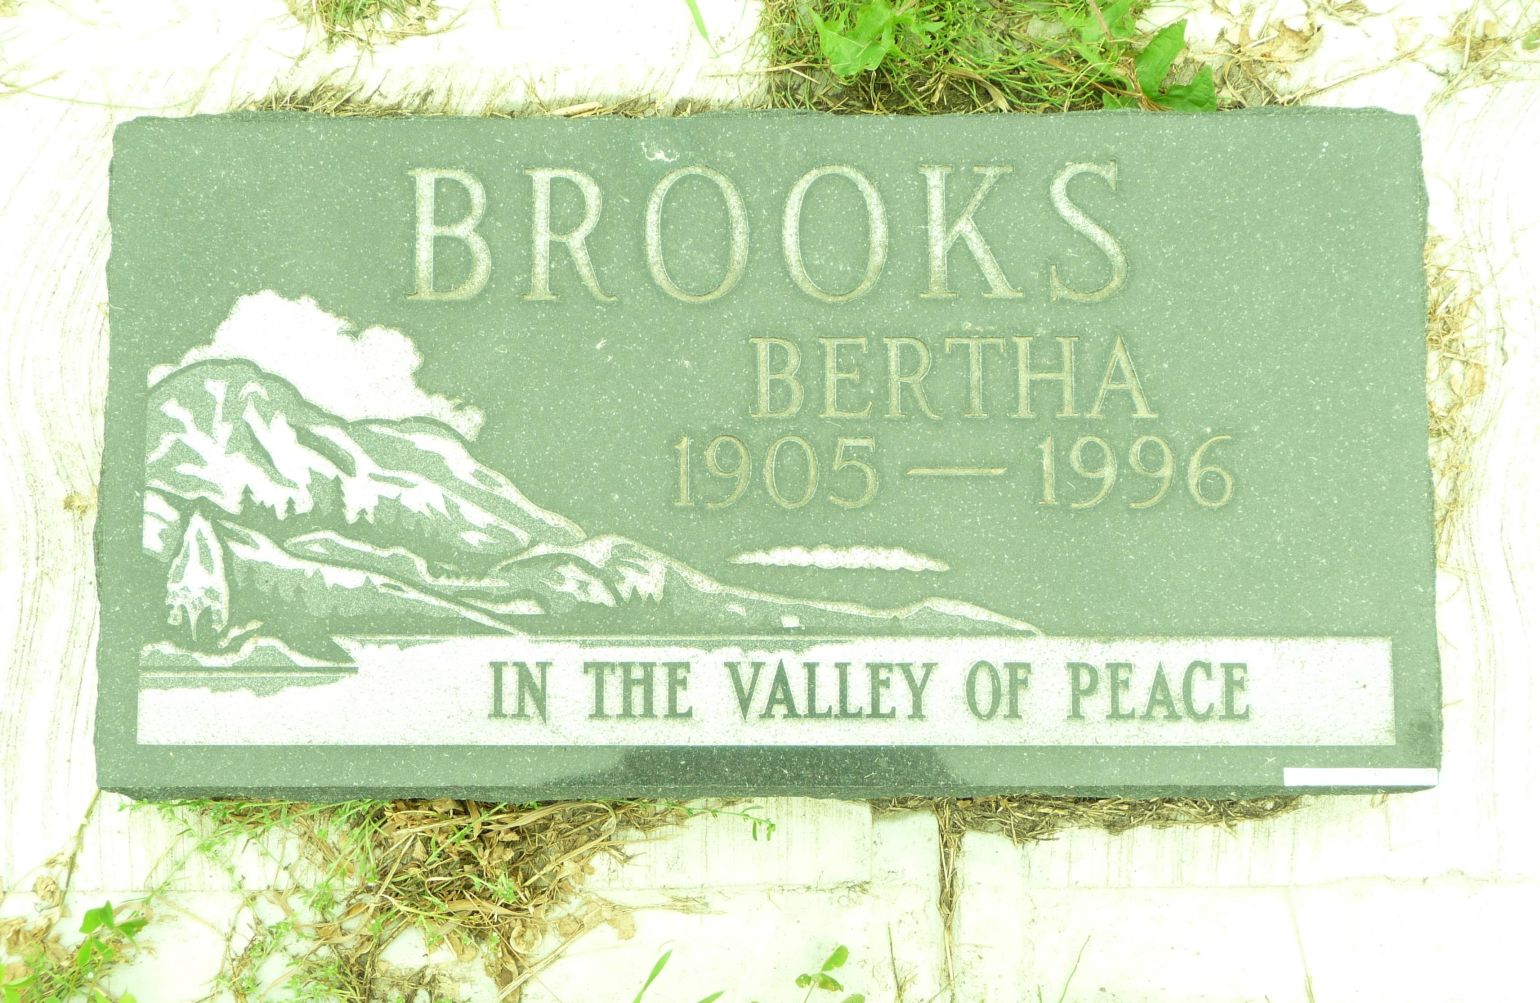 Headstone for Bertha Brooks